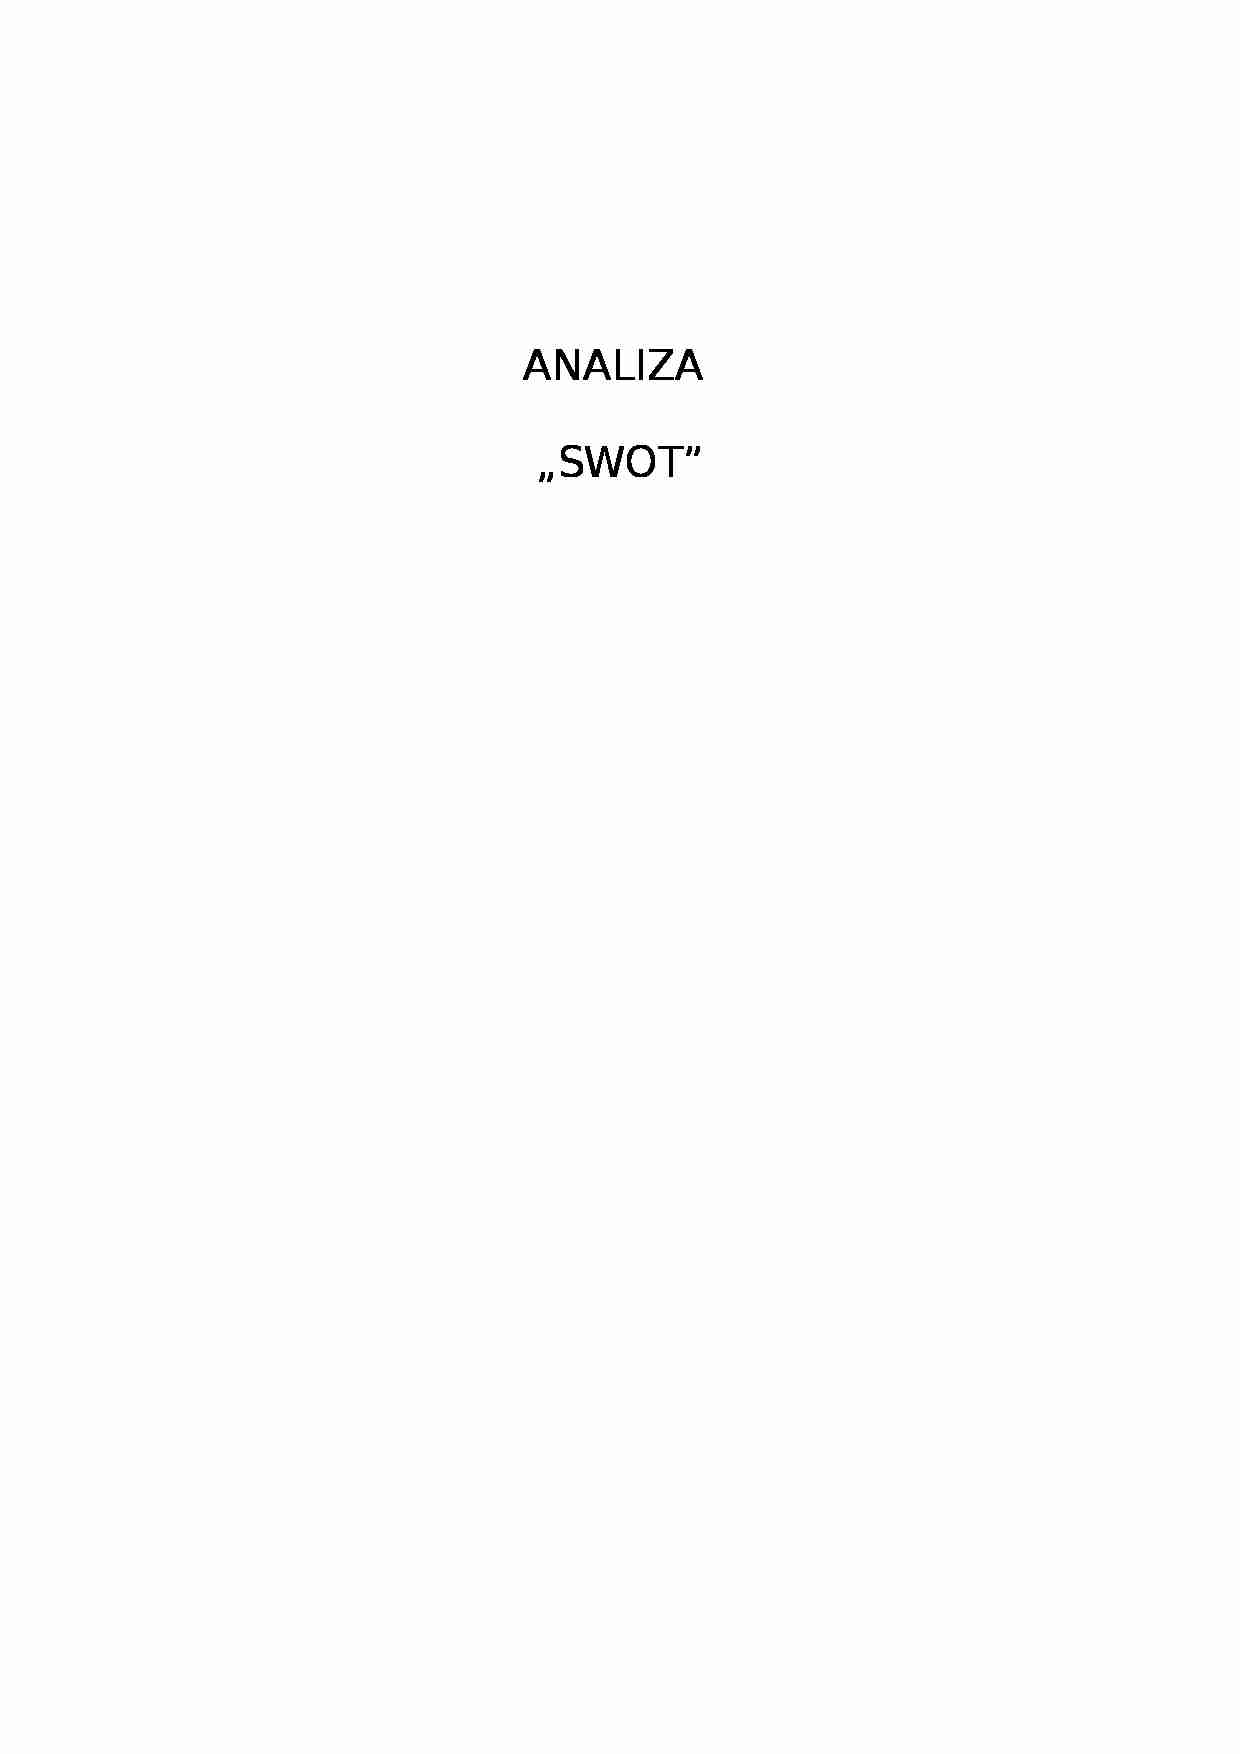 Analiza SWOT - pozycja strategiczna - strona 1